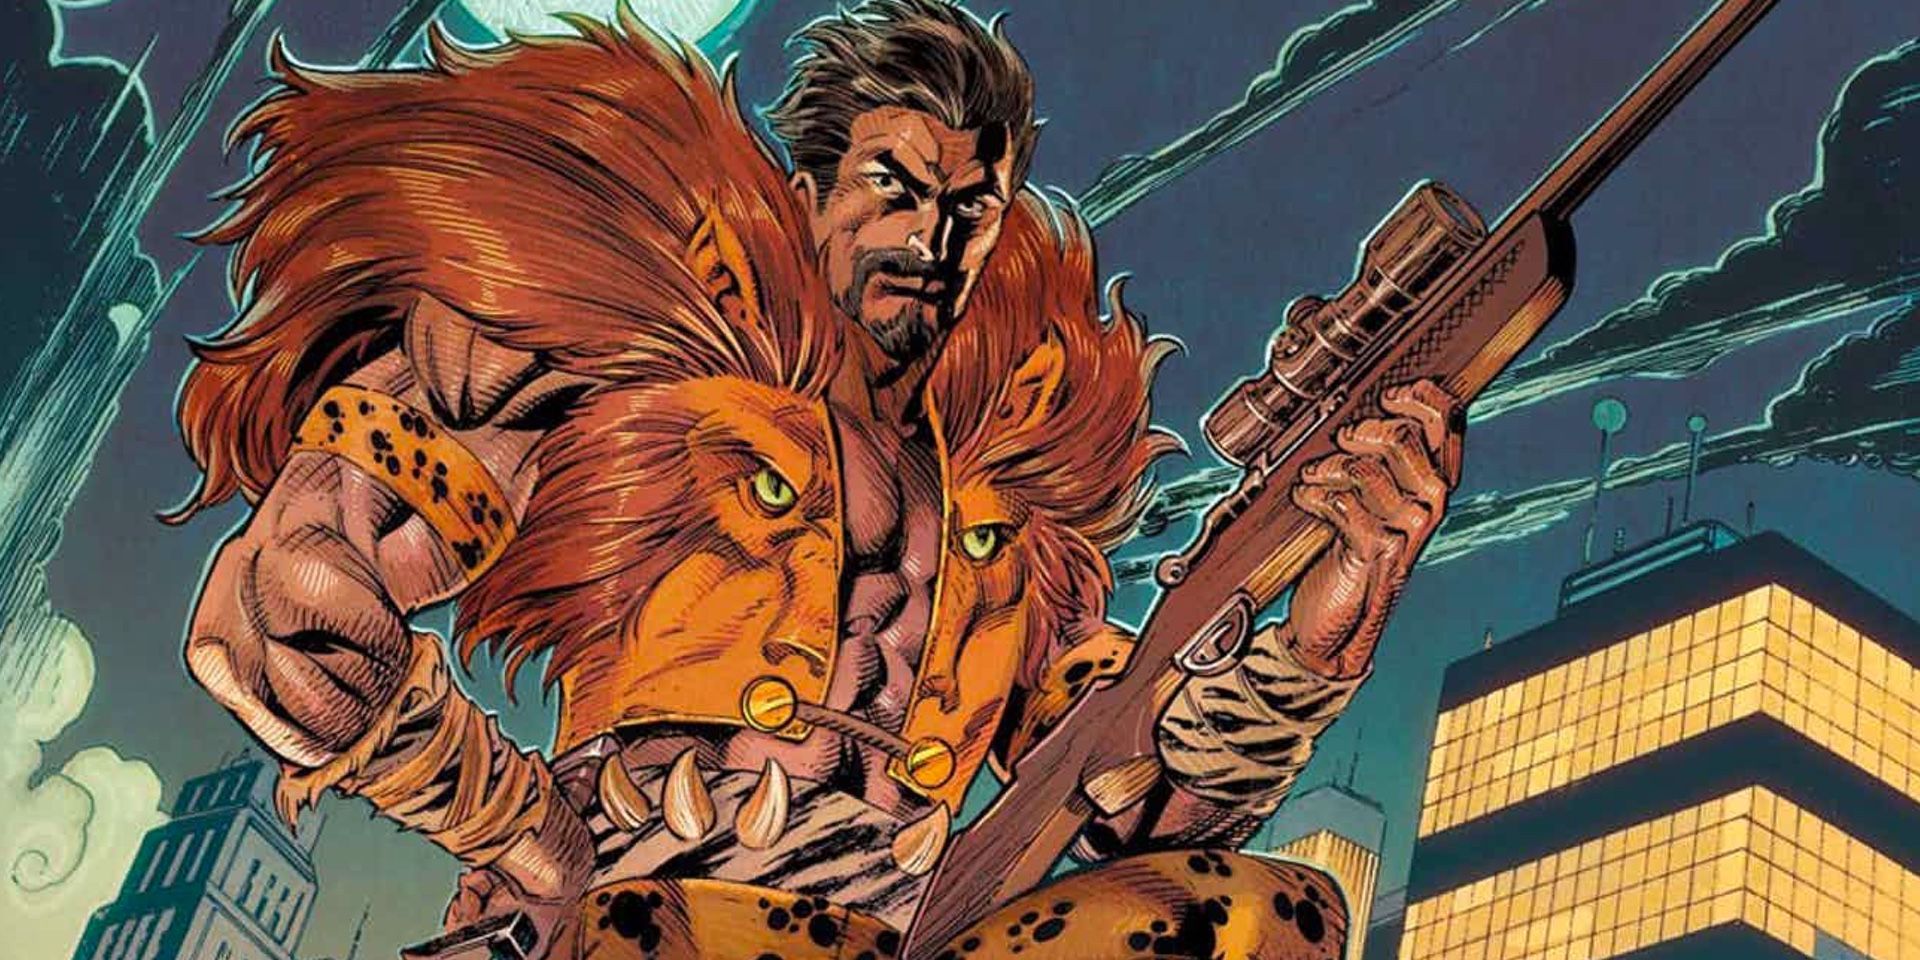 Kraven the Hunter holding a gun in Marvel comics